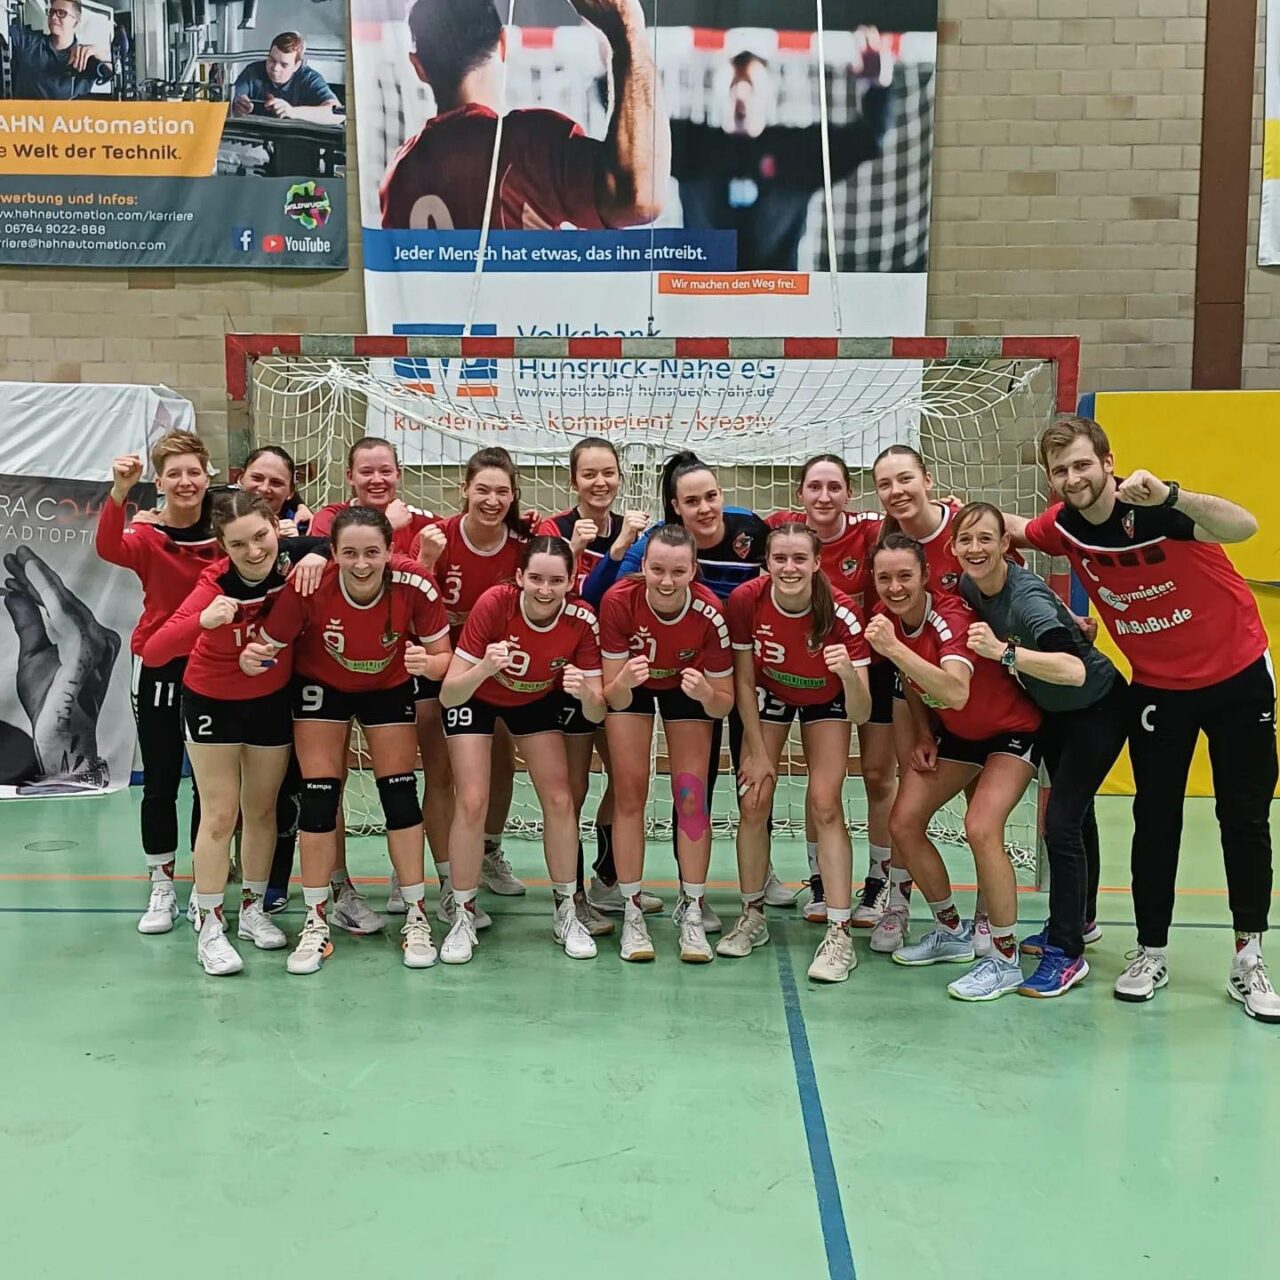 Damen 1 gewinnen gegen HC Koblenz!